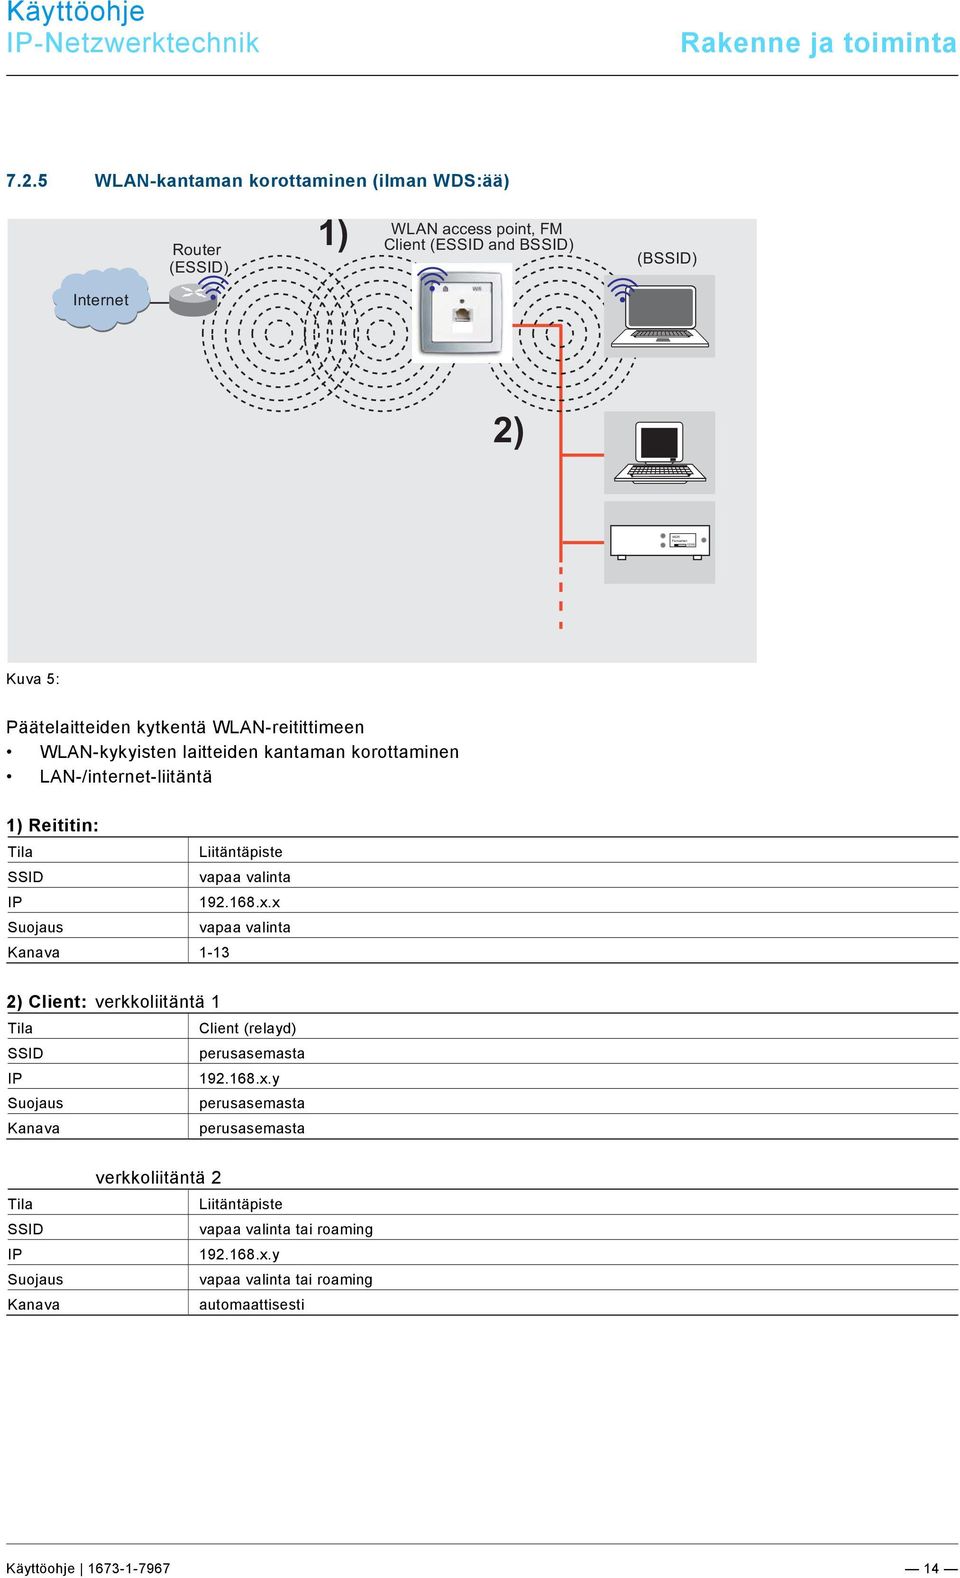 5 WLAN-kantaman korottaminen (ilman WDS:ää) Router (ESSID) 1) WLAN access point, FM Client (ESSID and BSSID) (BSSID) Internet 2) Kuva 5: Päätelaitteiden kytkentä